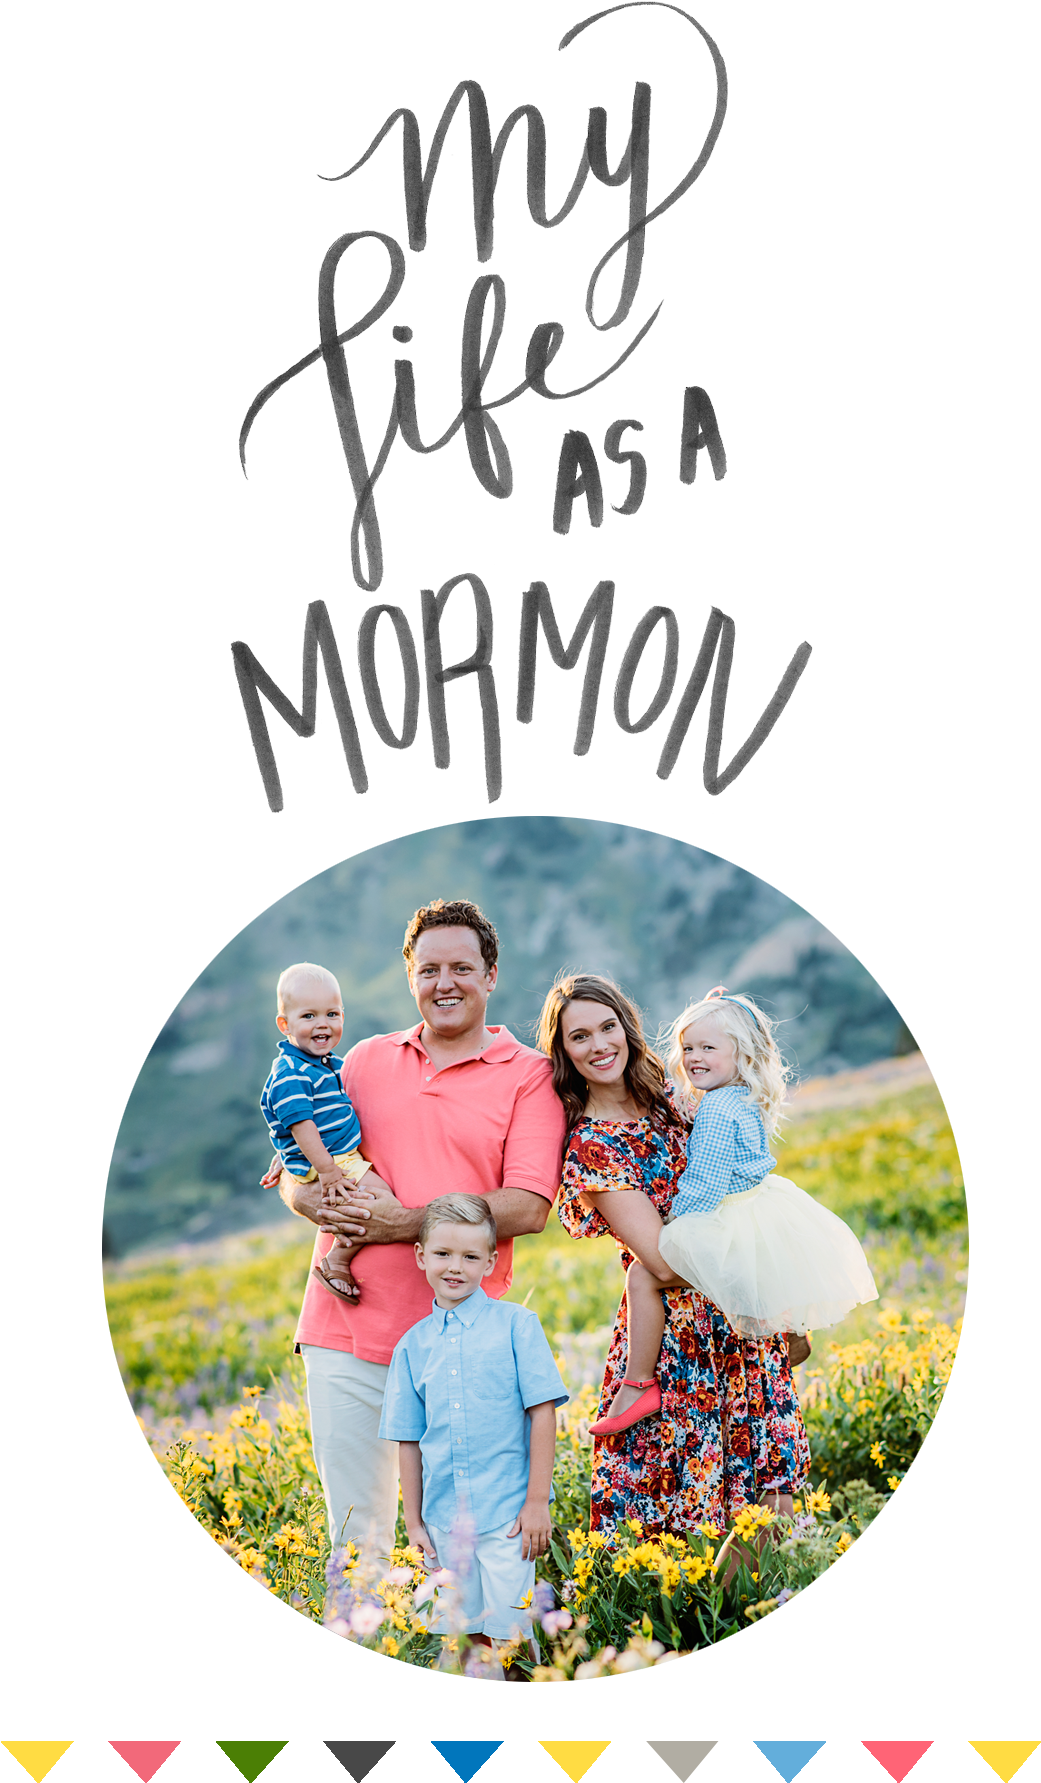 My Life As A Mormon - Book Cover (1131x1806)